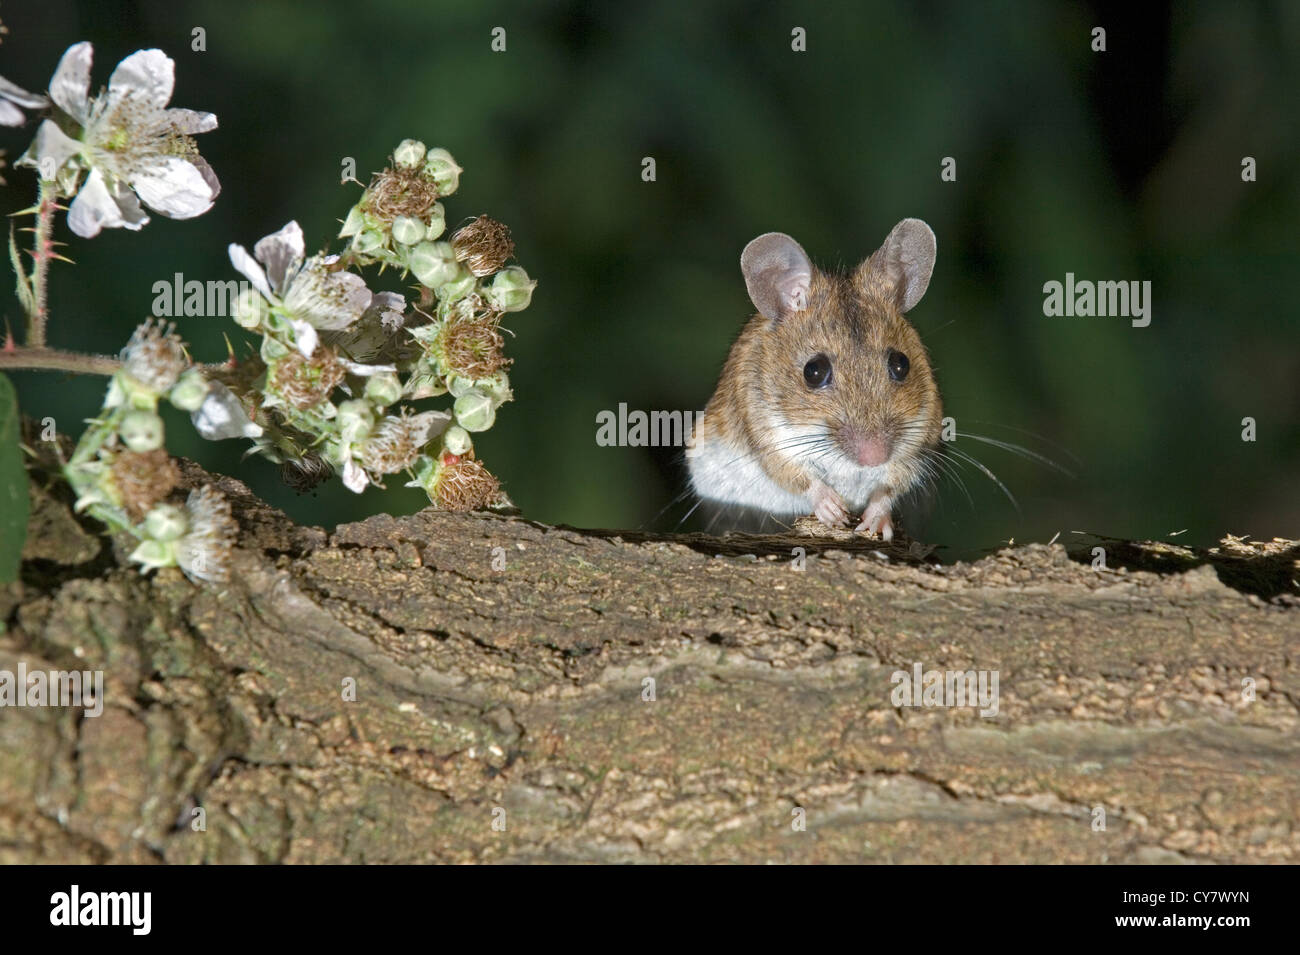 Madera (Apodemus sylvaticus ratón) Foto de stock